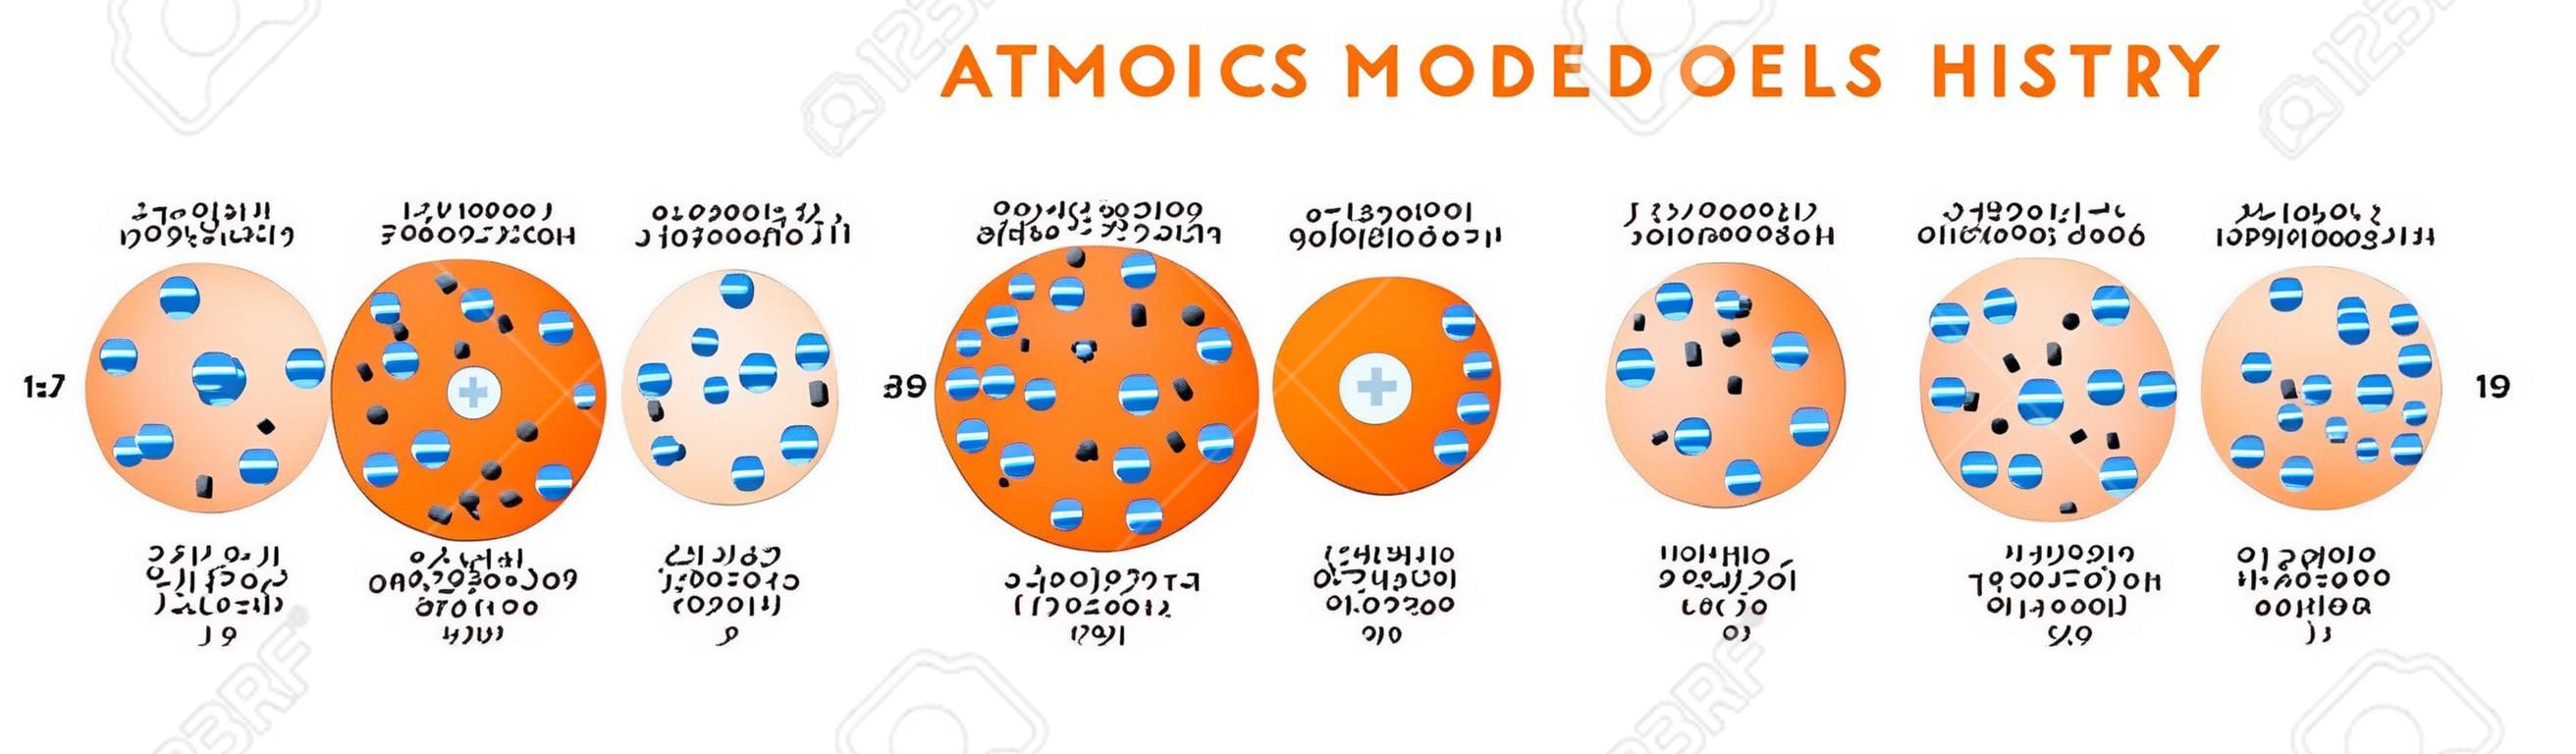 Diagramme d'infographie sur l'histoire des modèles atomiques, y compris Democritus Dalton Tomson Rutherford Bohr Schrodinger structures atomiques pour le vecteur d'affiches d'enseignement des sciences de la chimie